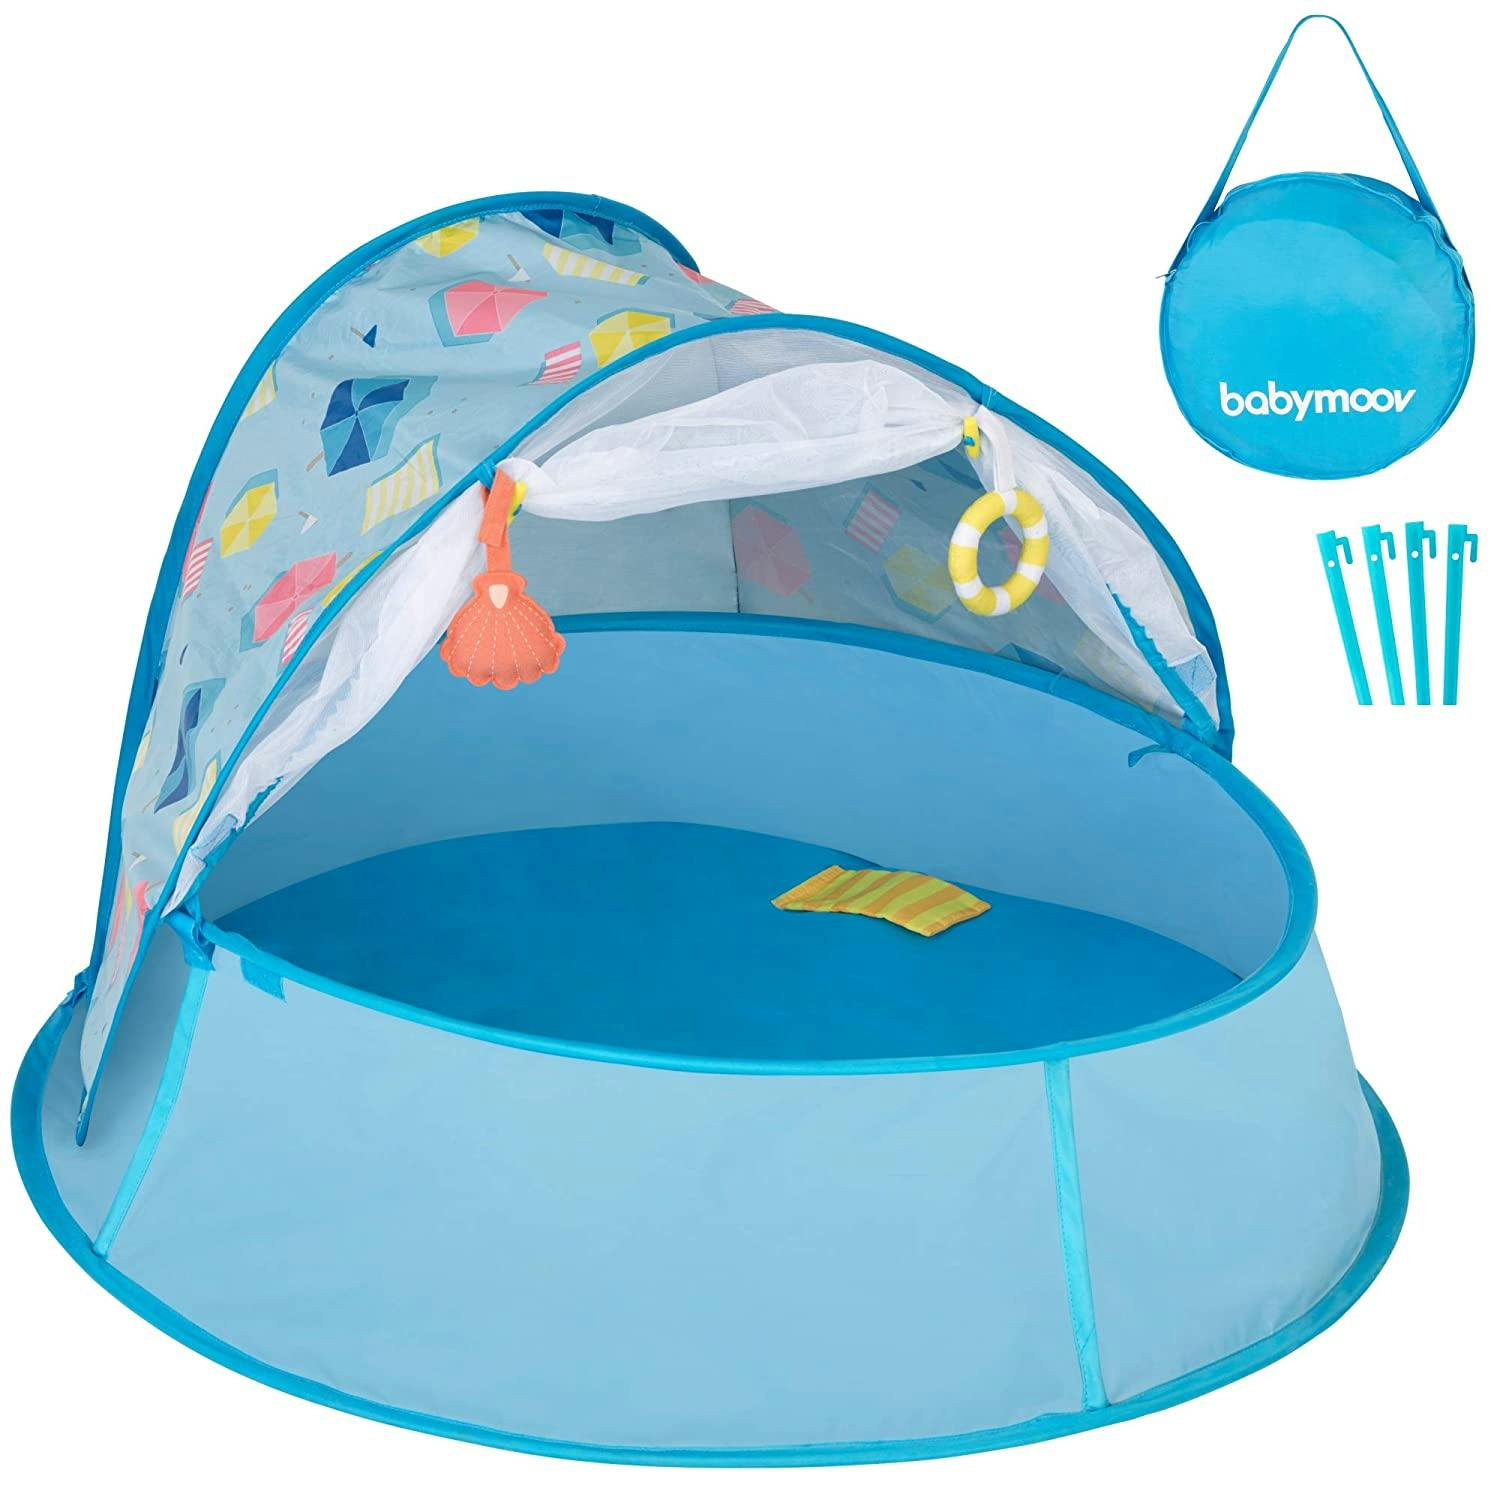 Babymoov Aquani Parasol Tent · Aqua